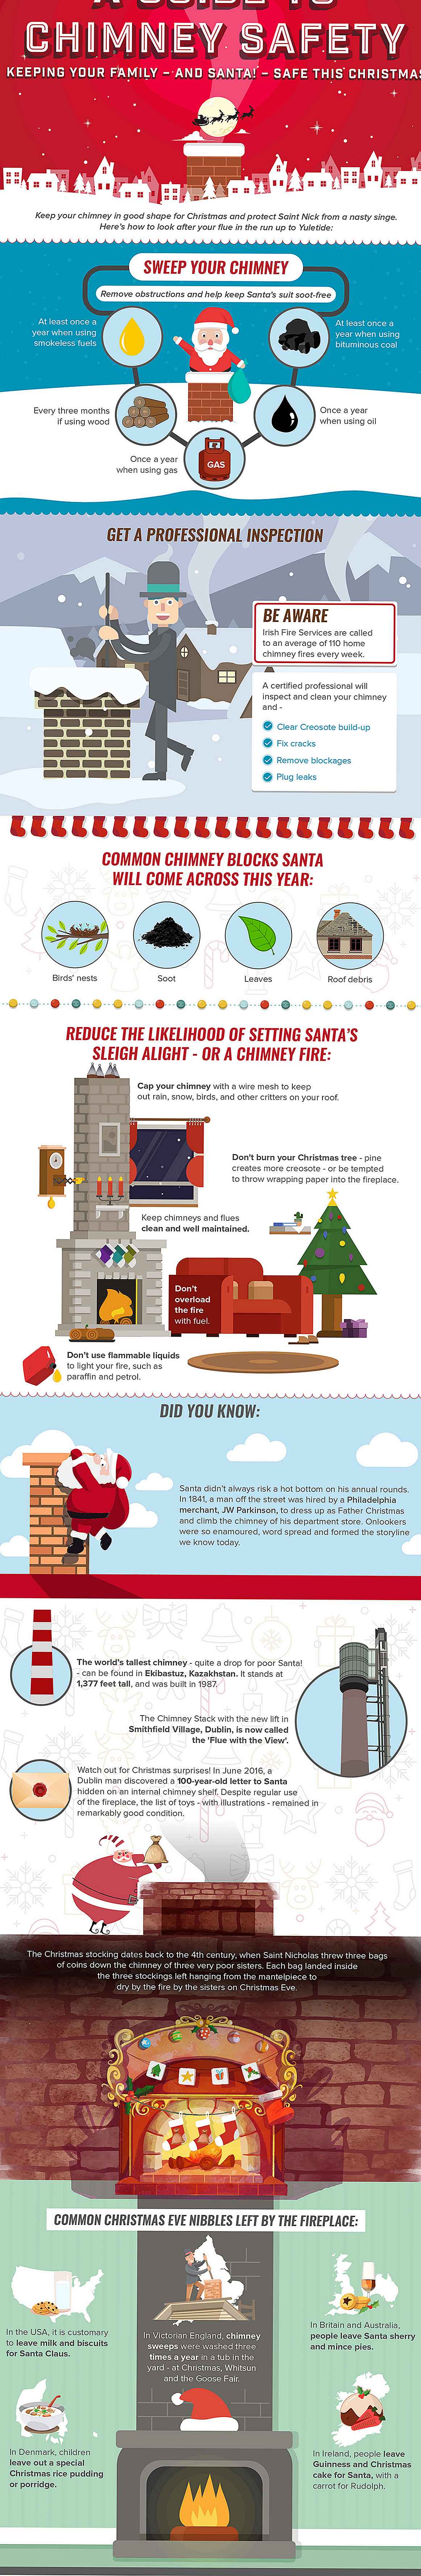 Infografía: ¡Una guía para la seguridad de las chimeneas para mantener a Santa y su familia seguros!